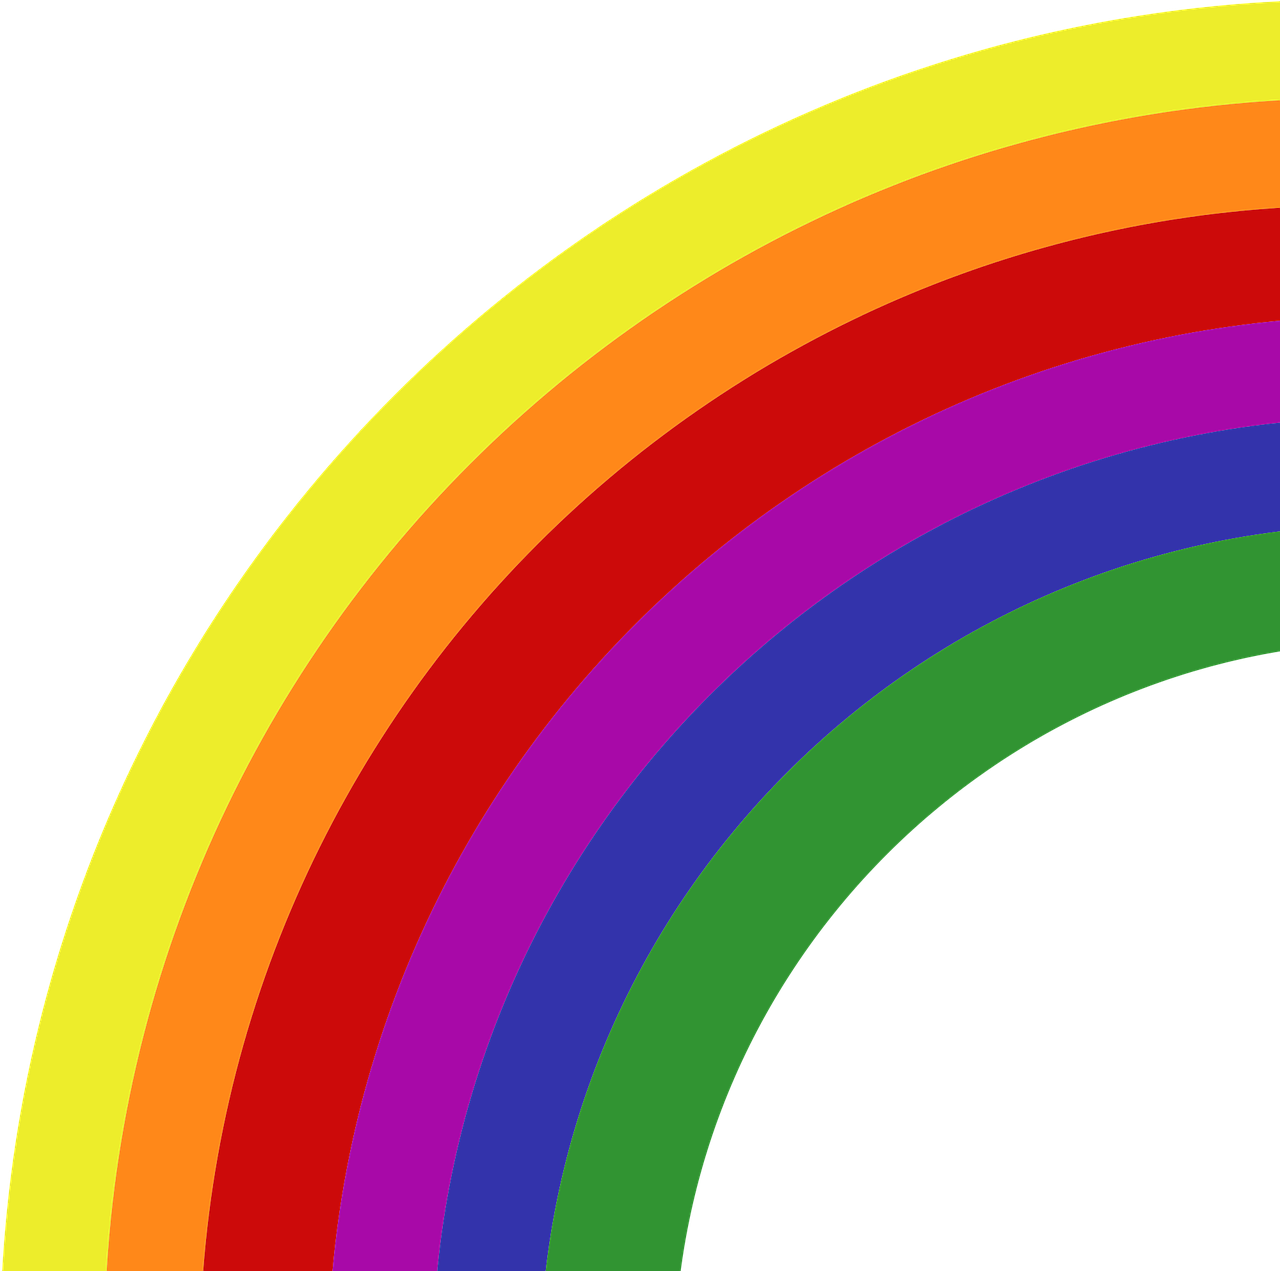 Das Bild zeigt einen Regenbogen